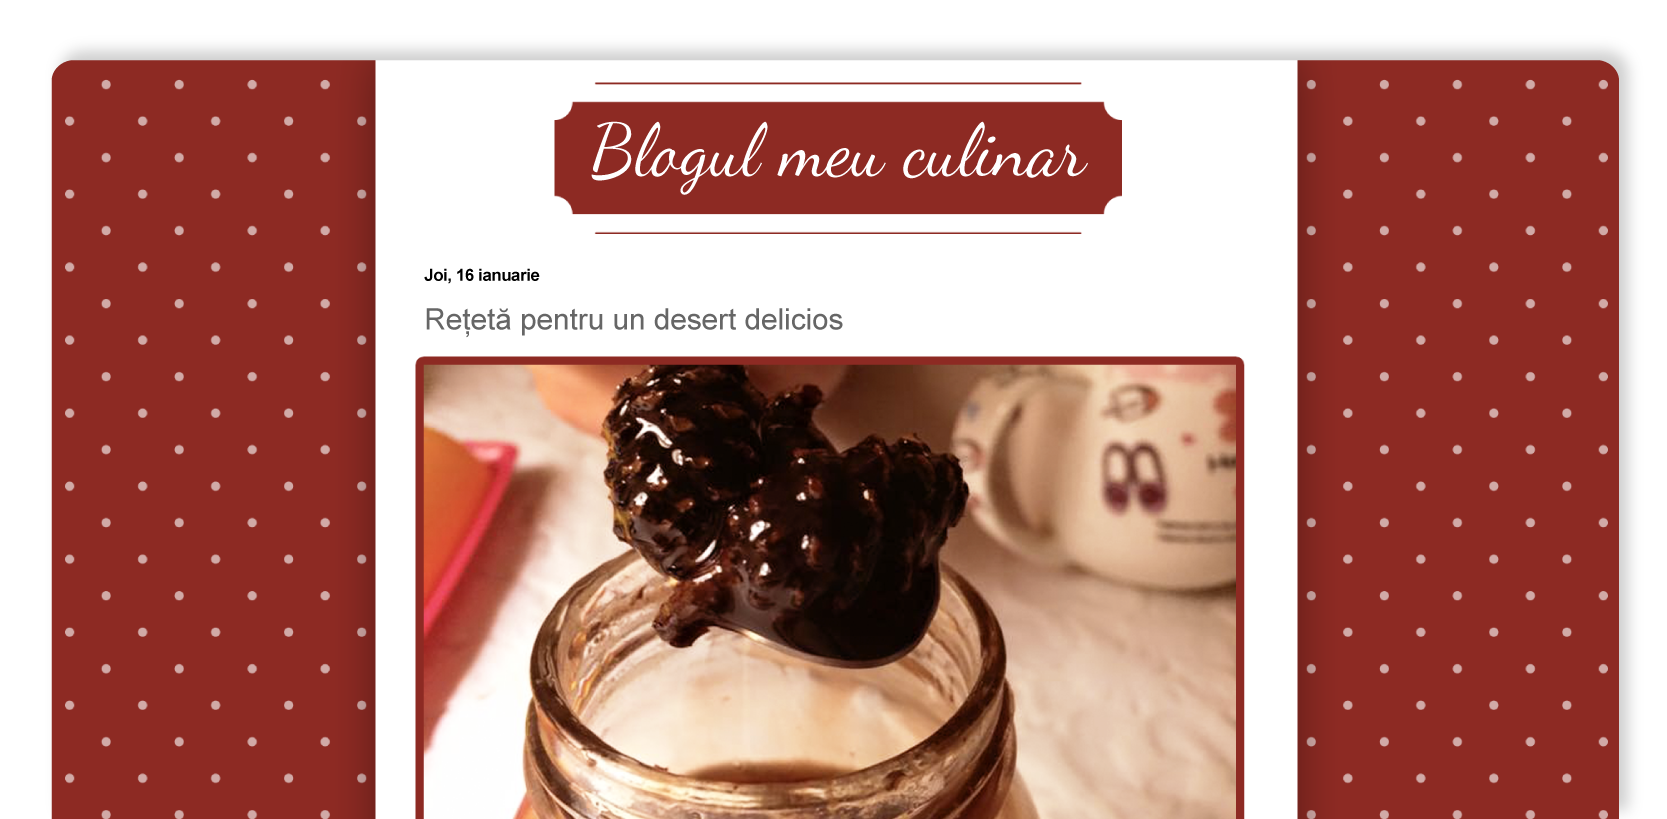 Blog culinar